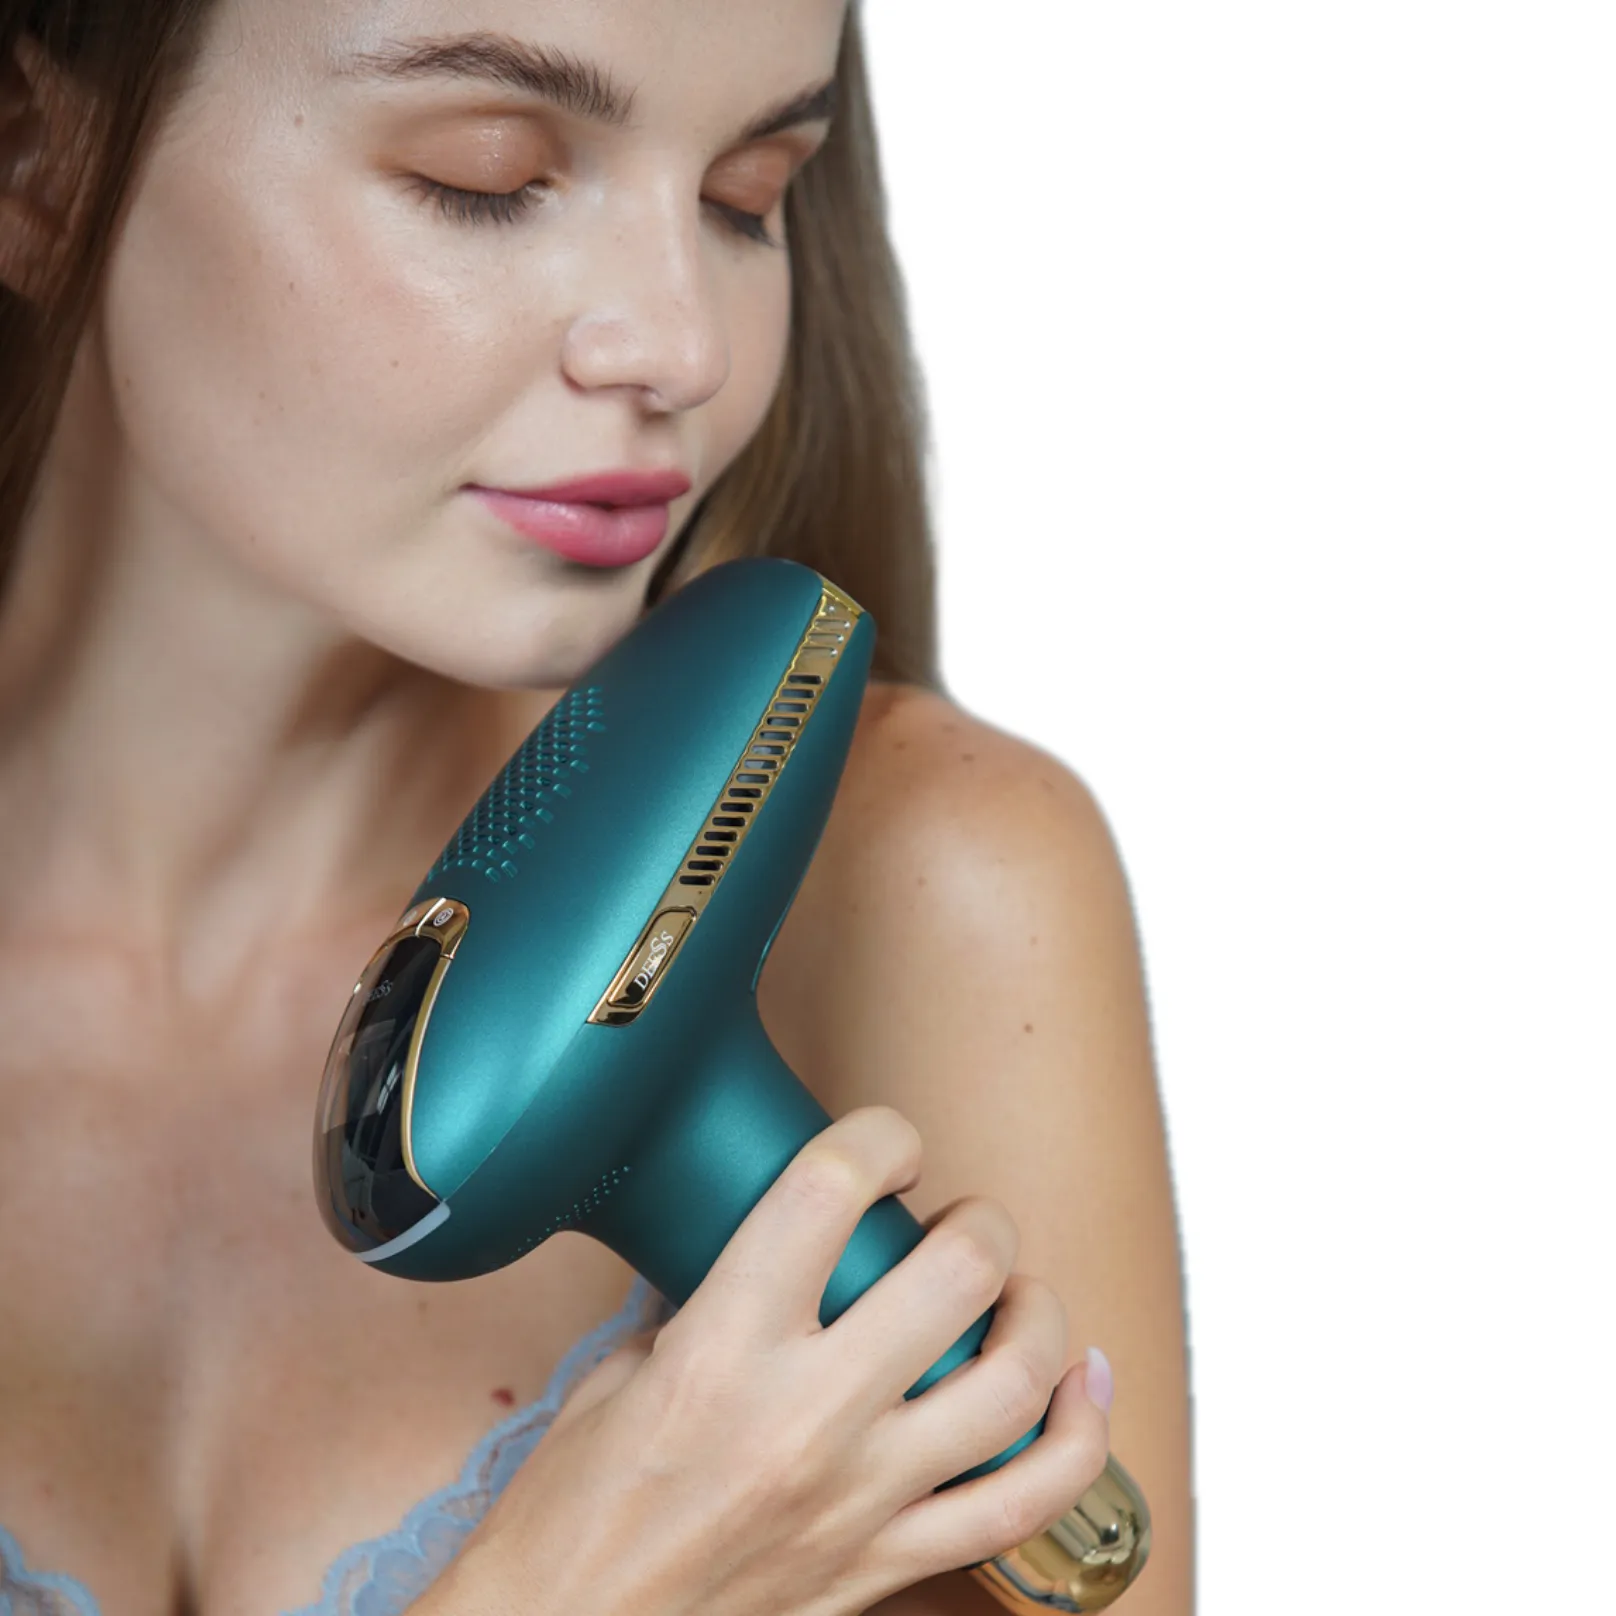 أجهزة إزالة الشعر بالليزر ipl من sapphire جهاز عناية بالوجه جهاز إزالة الشعر بالليزر بدون ألم للاستخدام المنزلي جهاز إزالة الشعر بالليزر